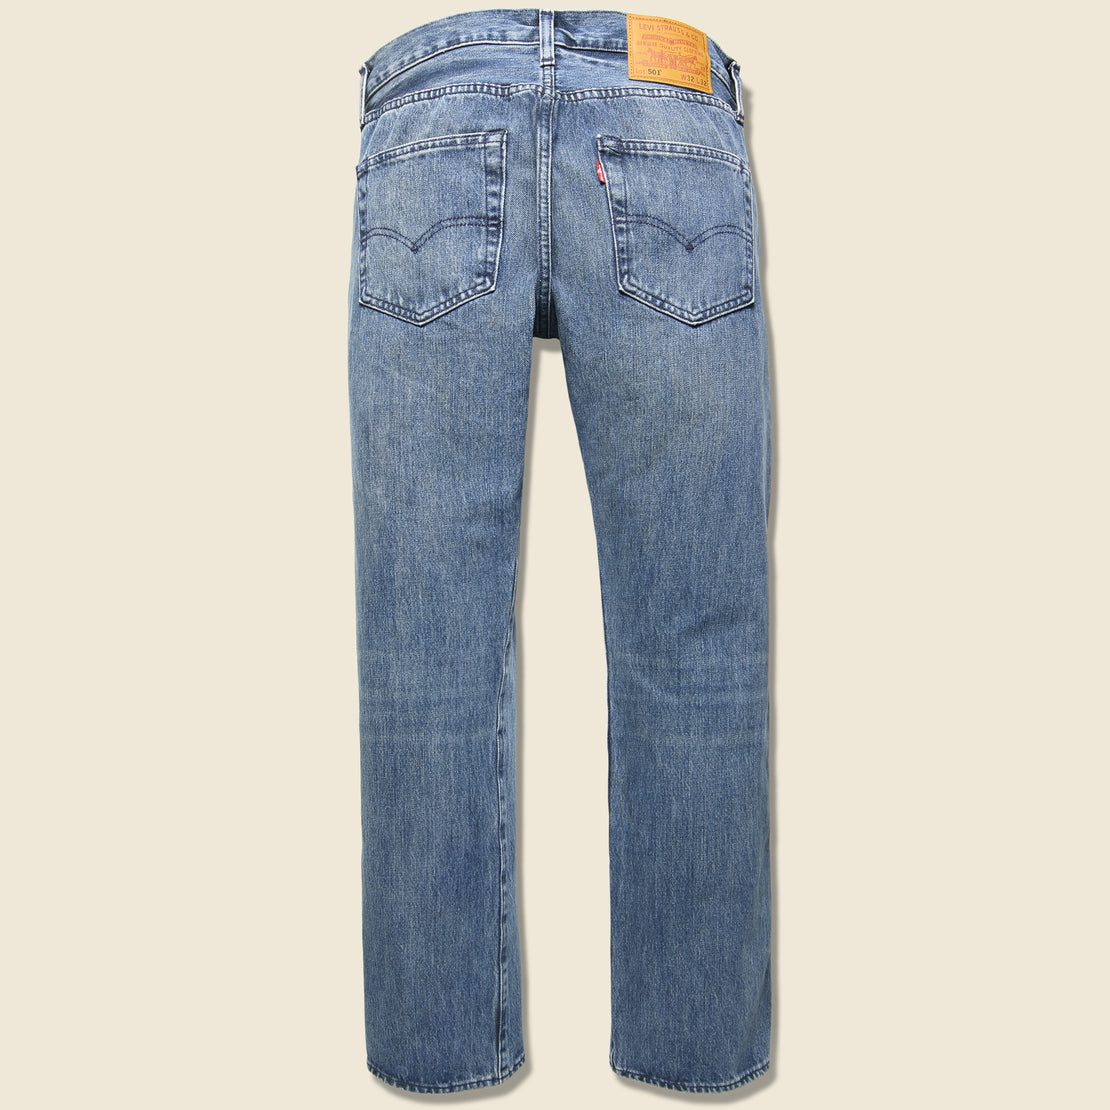 501 Jean - Tissue - Levis Premium - STAG Provisions - Pants - Denim